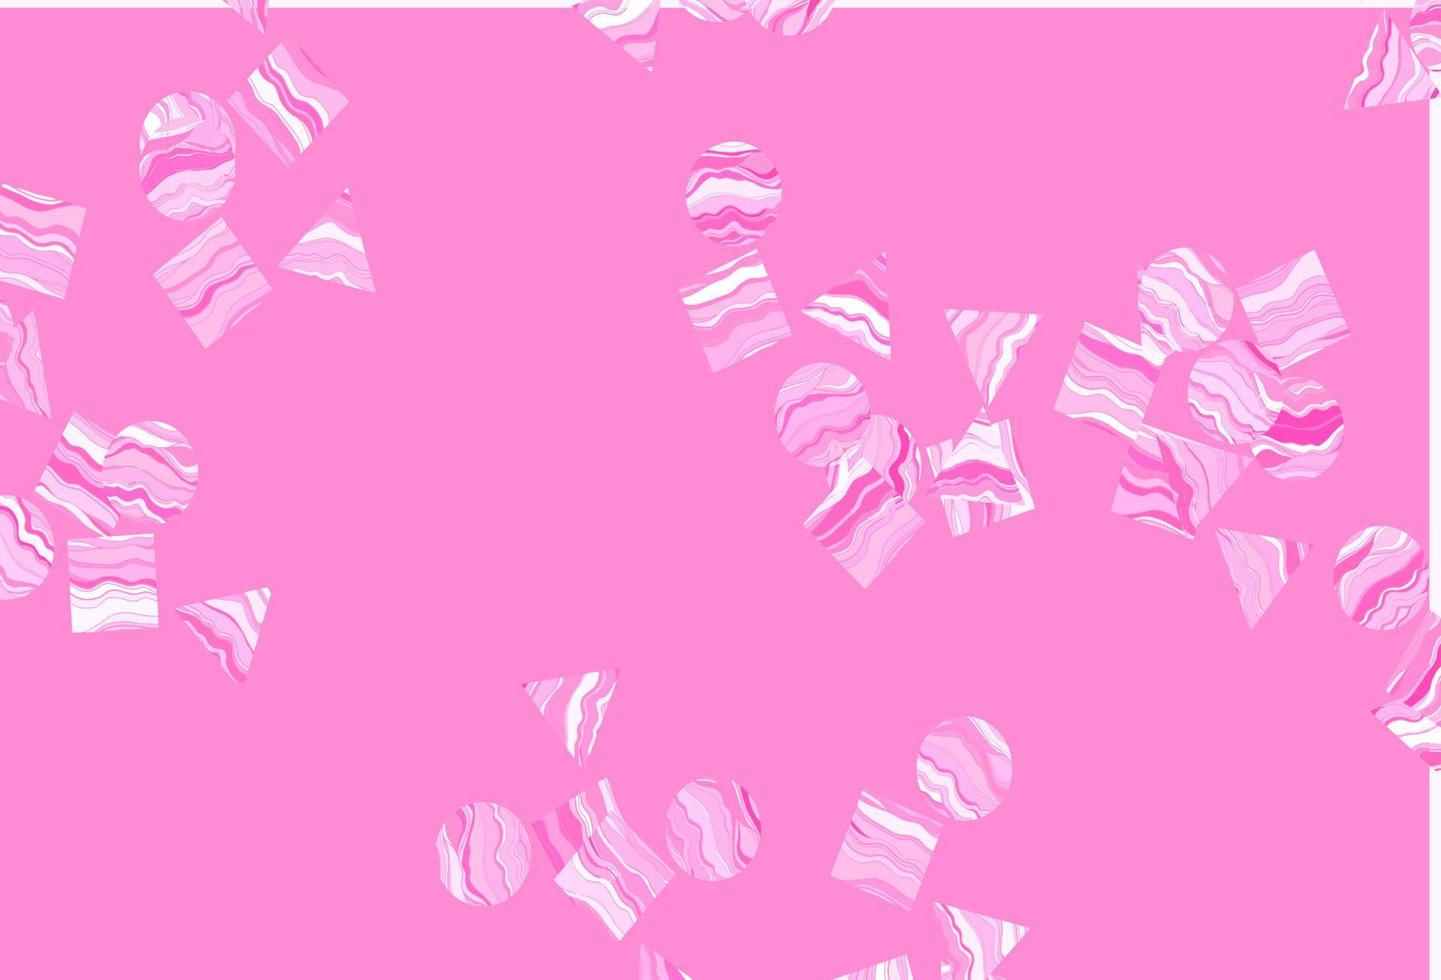 layout de vetor rosa claro com círculos, linhas, retângulos.